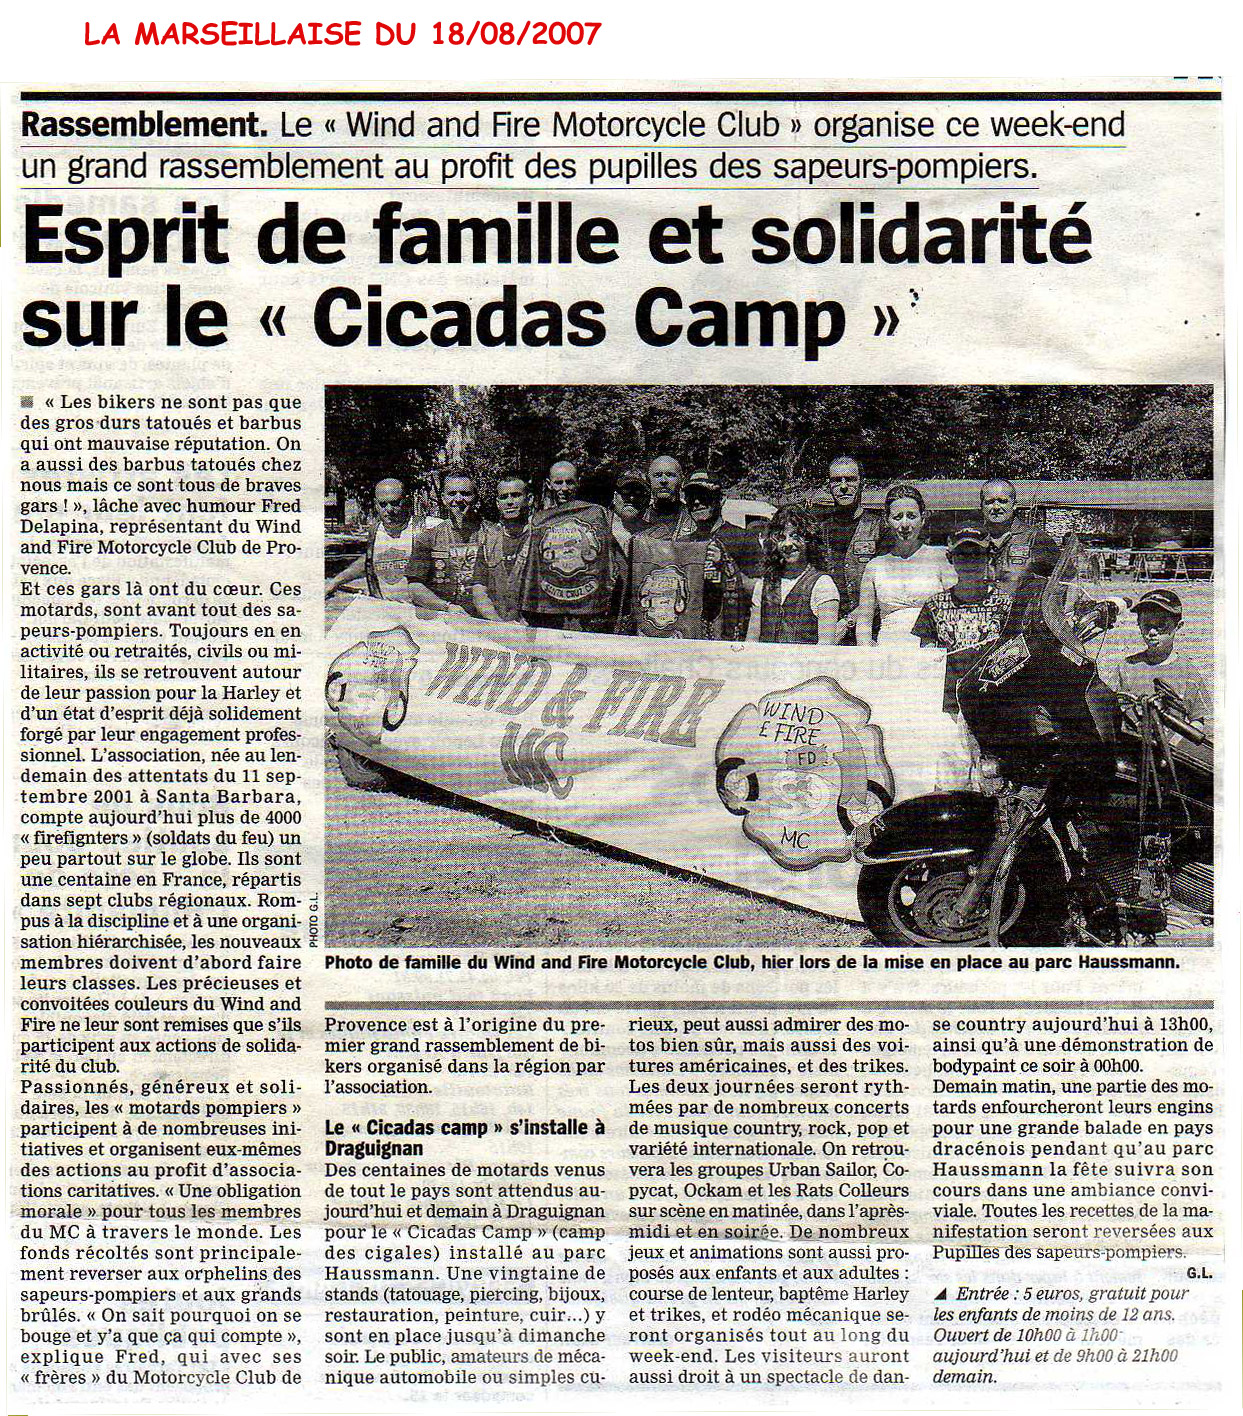 Esprit de famille et solidarité sur le cicascamp - 18 Août 2007